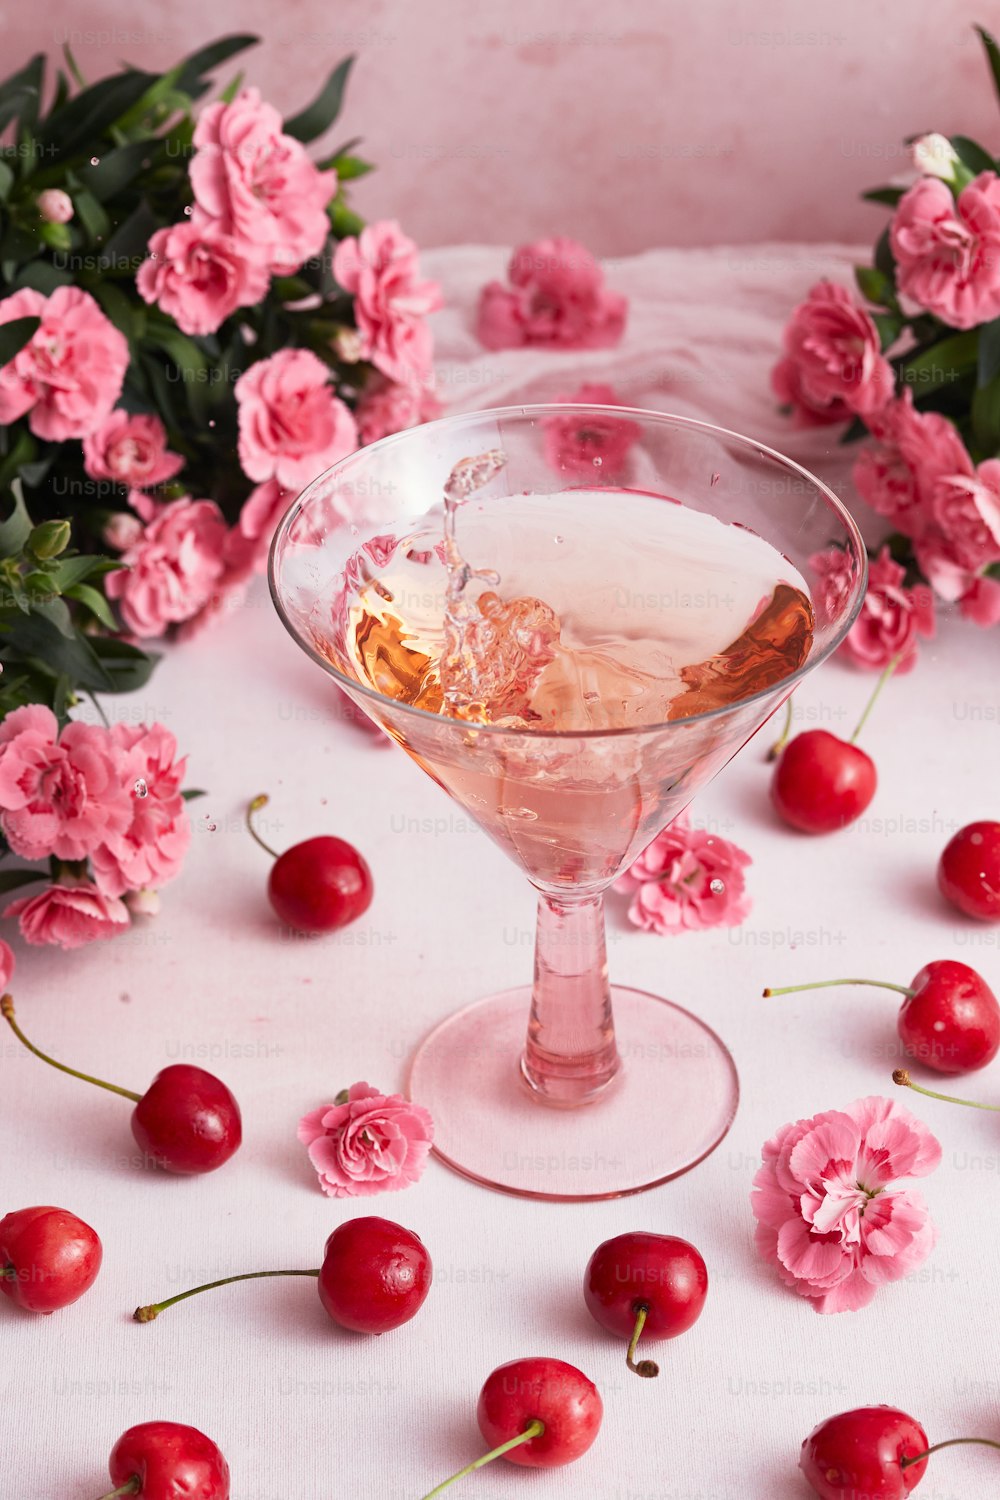 un bicchiere pieno di un liquido circondato da fiori e ciliegie